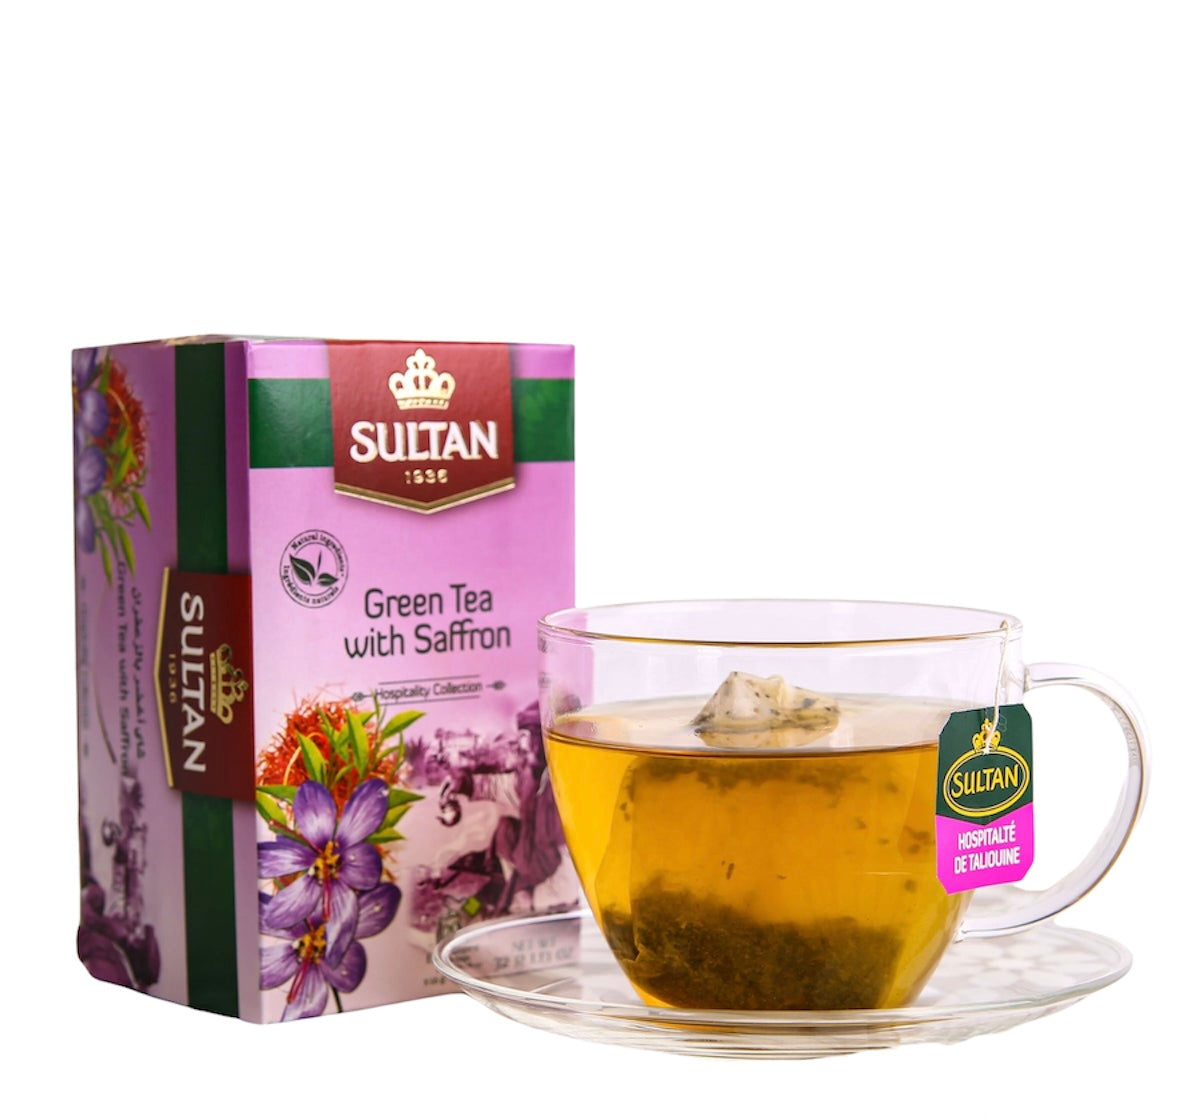 SULTAN Tisane Green tea with Saffron 20x bag